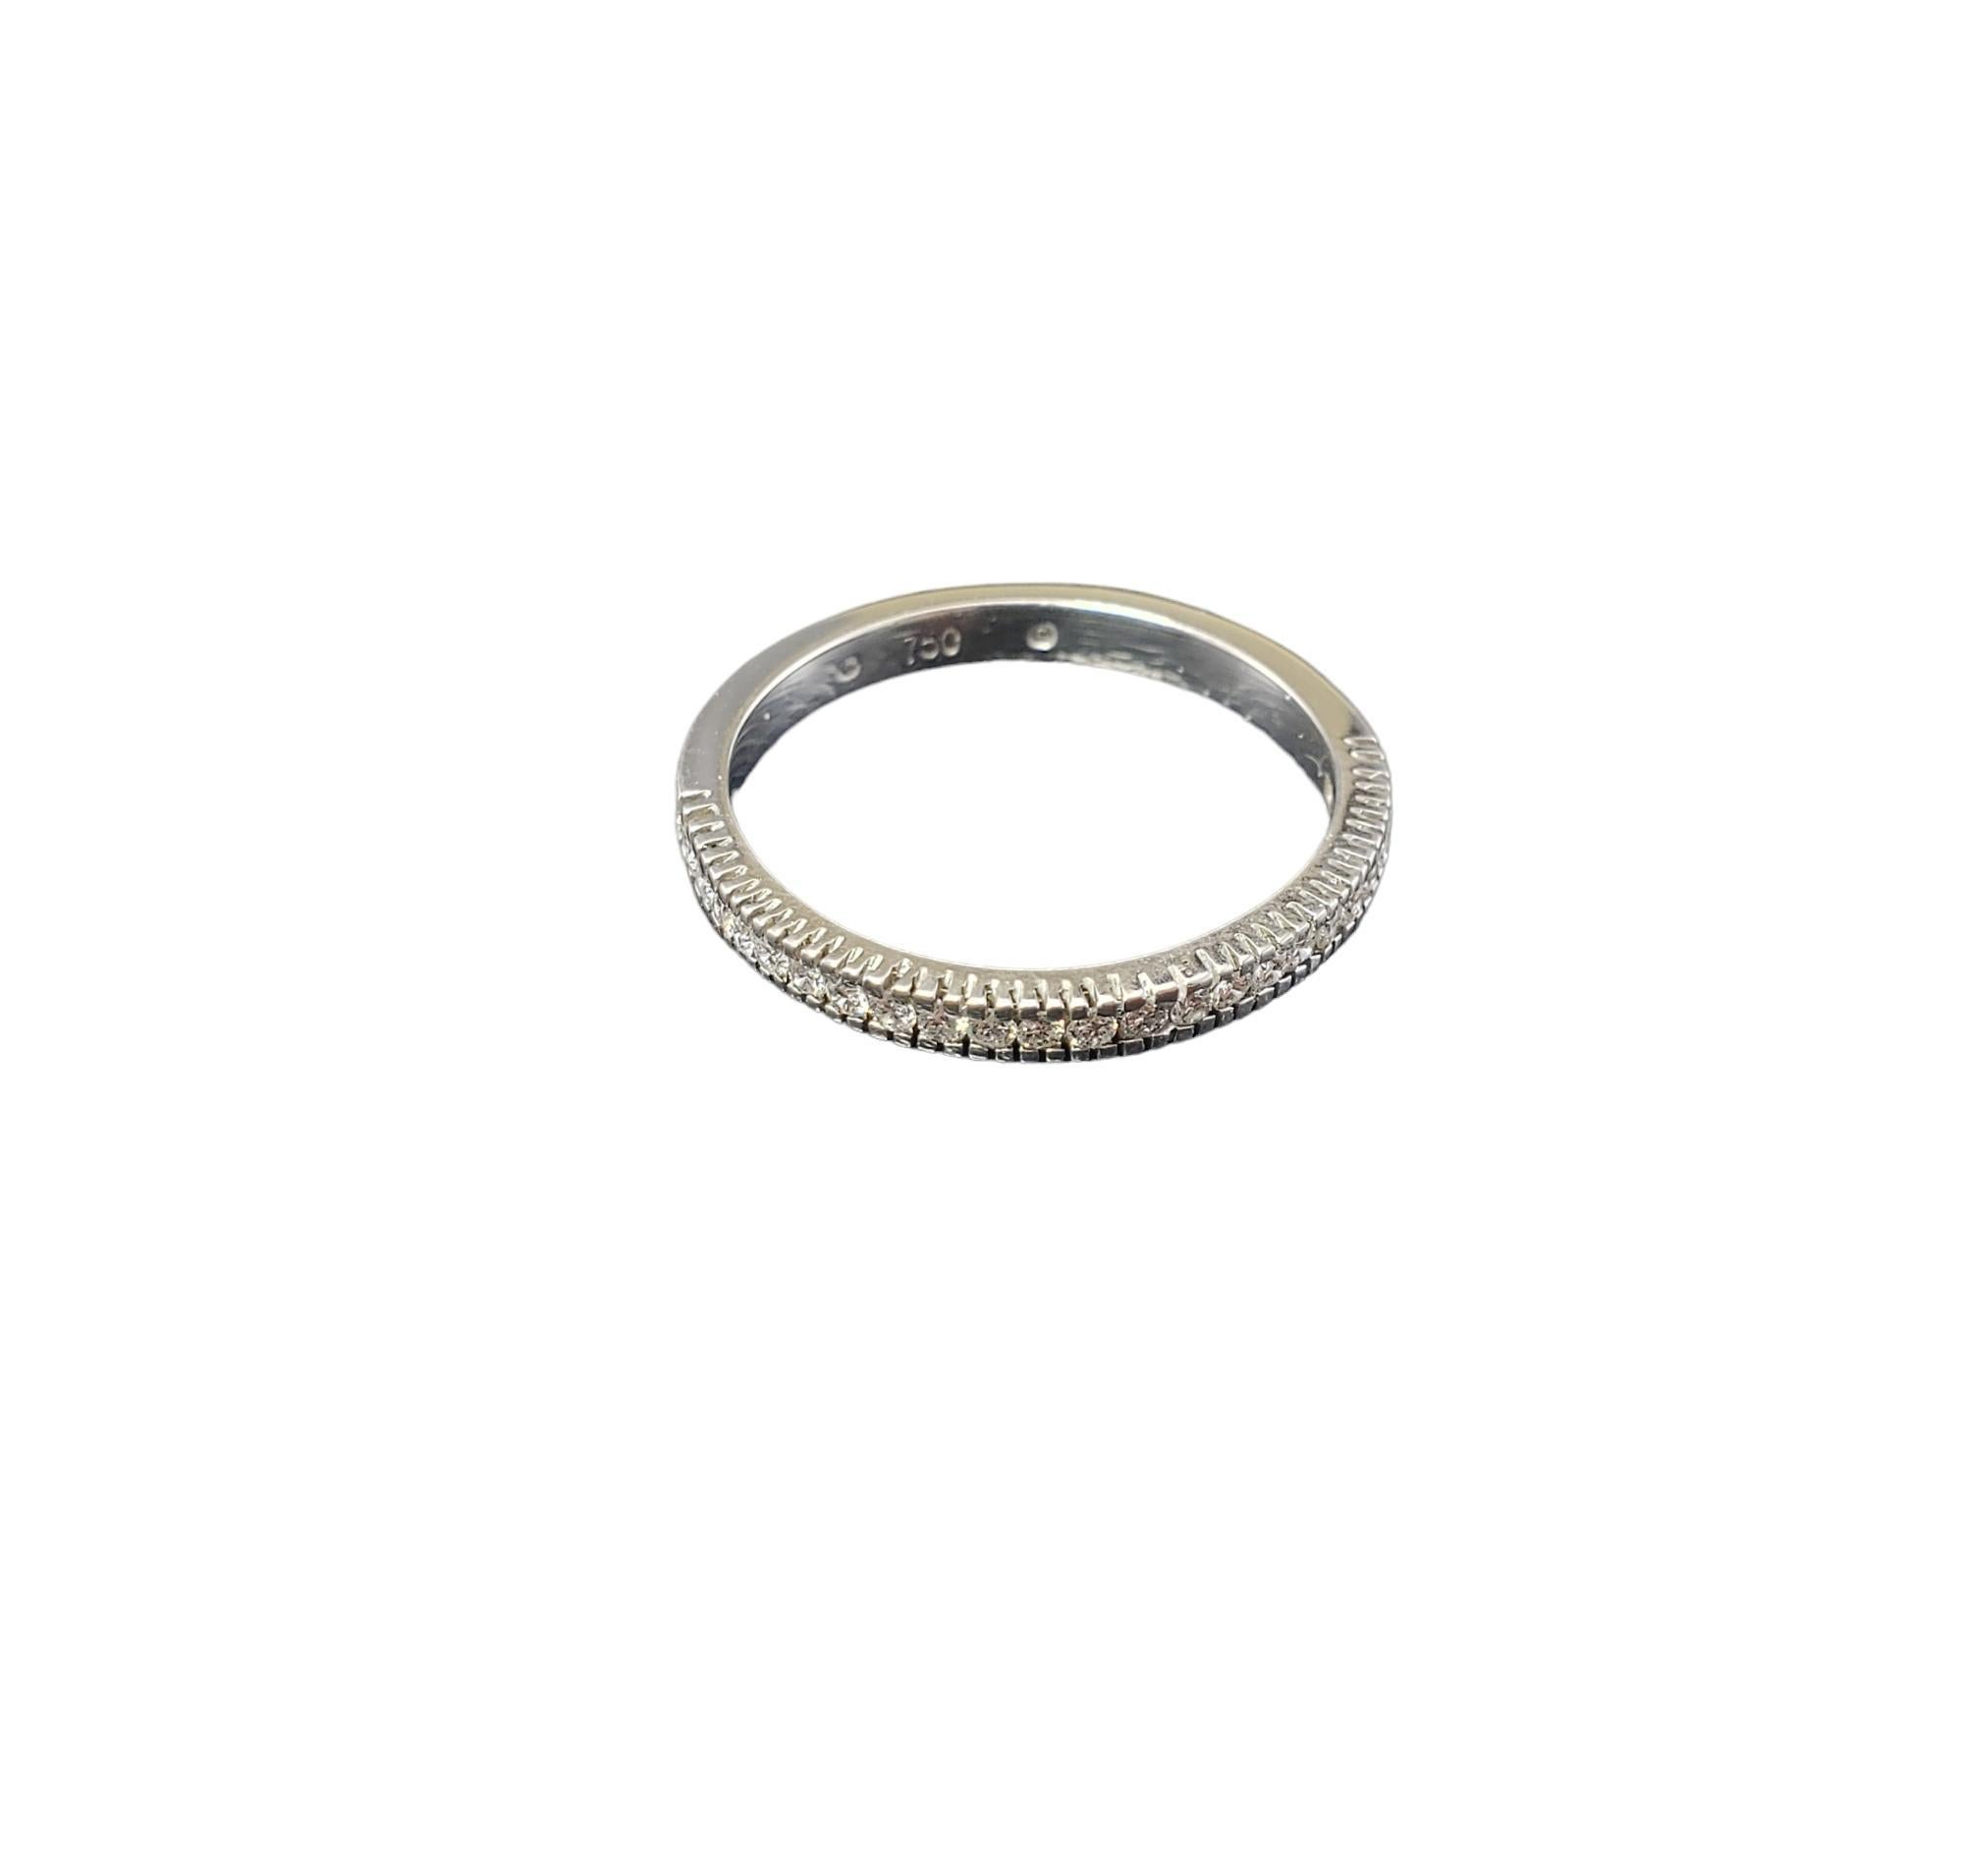 Vintage 18K White Gold Diamond Band Ring Größe 7.25-7.5-

Dieses funkelnde Band ist mit 23 runden Diamanten im Brillantschliff besetzt und in klassisches 18-karätiges Weißgold gefasst.  Breite: 2 mm.

Ungefähres Gesamtgewicht der Diamanten: 23